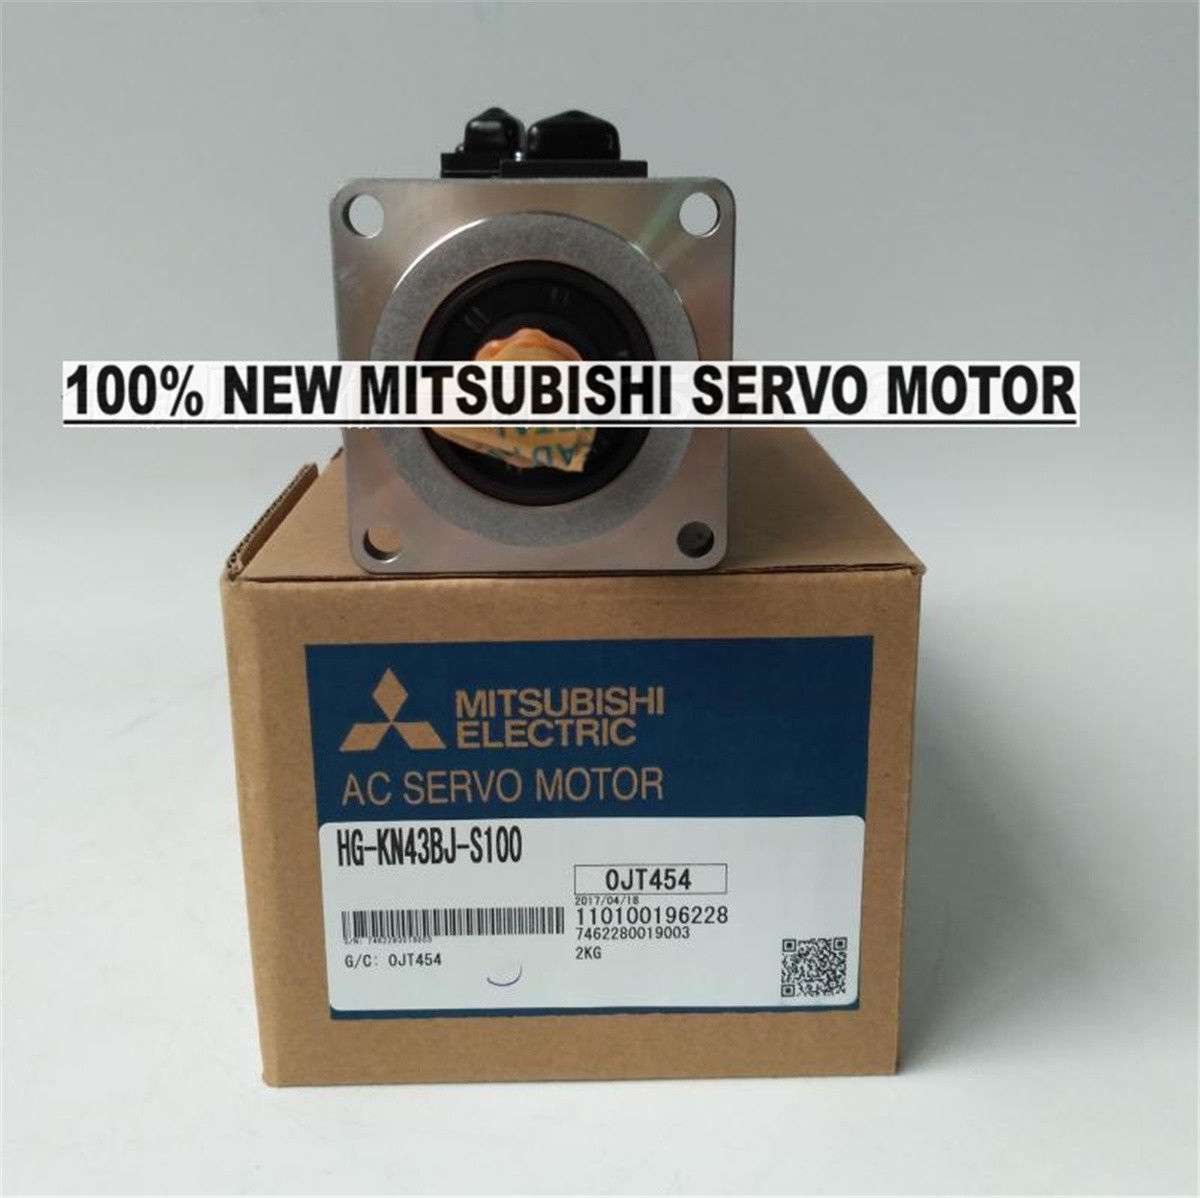 NEW Mitsubishi Servo Motor HG-KN43BJ-S100 in box HGKN43BJS100